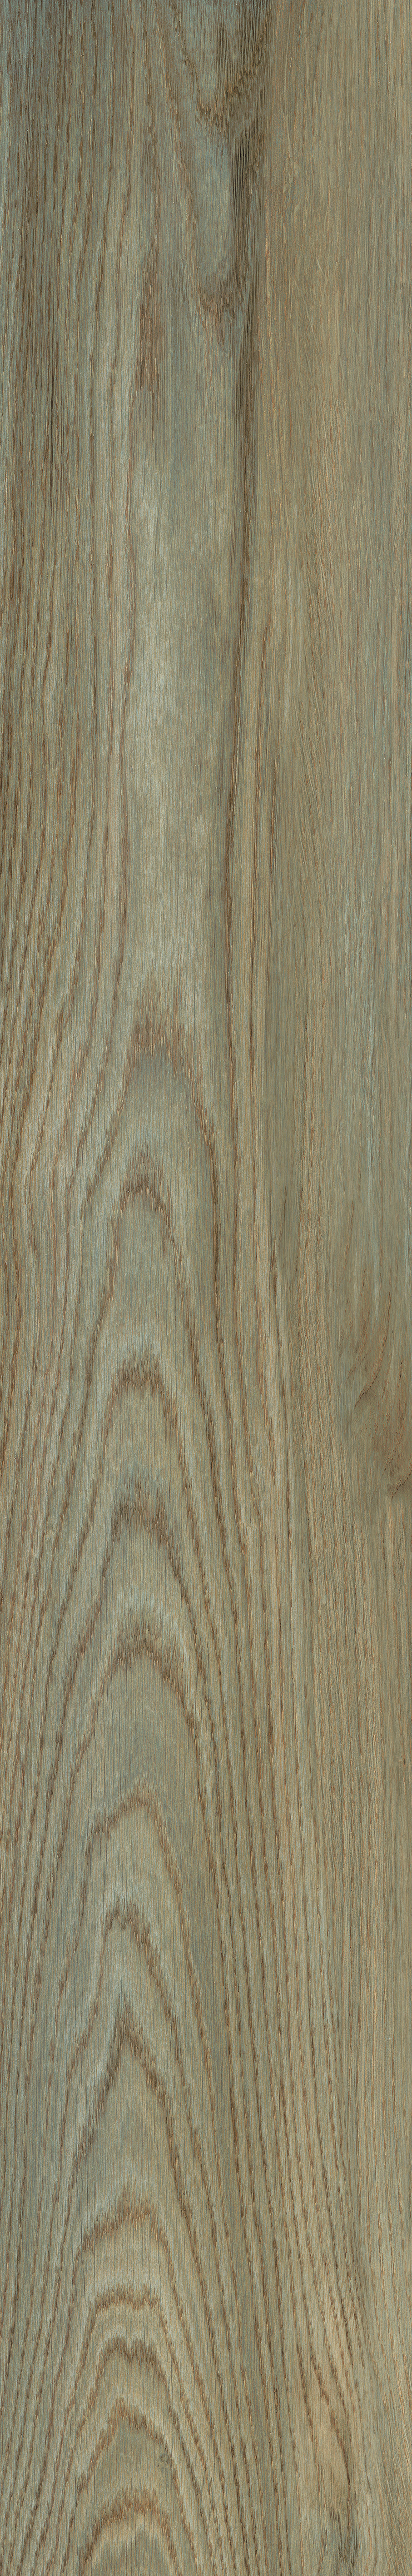 0-md bl wood nocciola (2).jpg